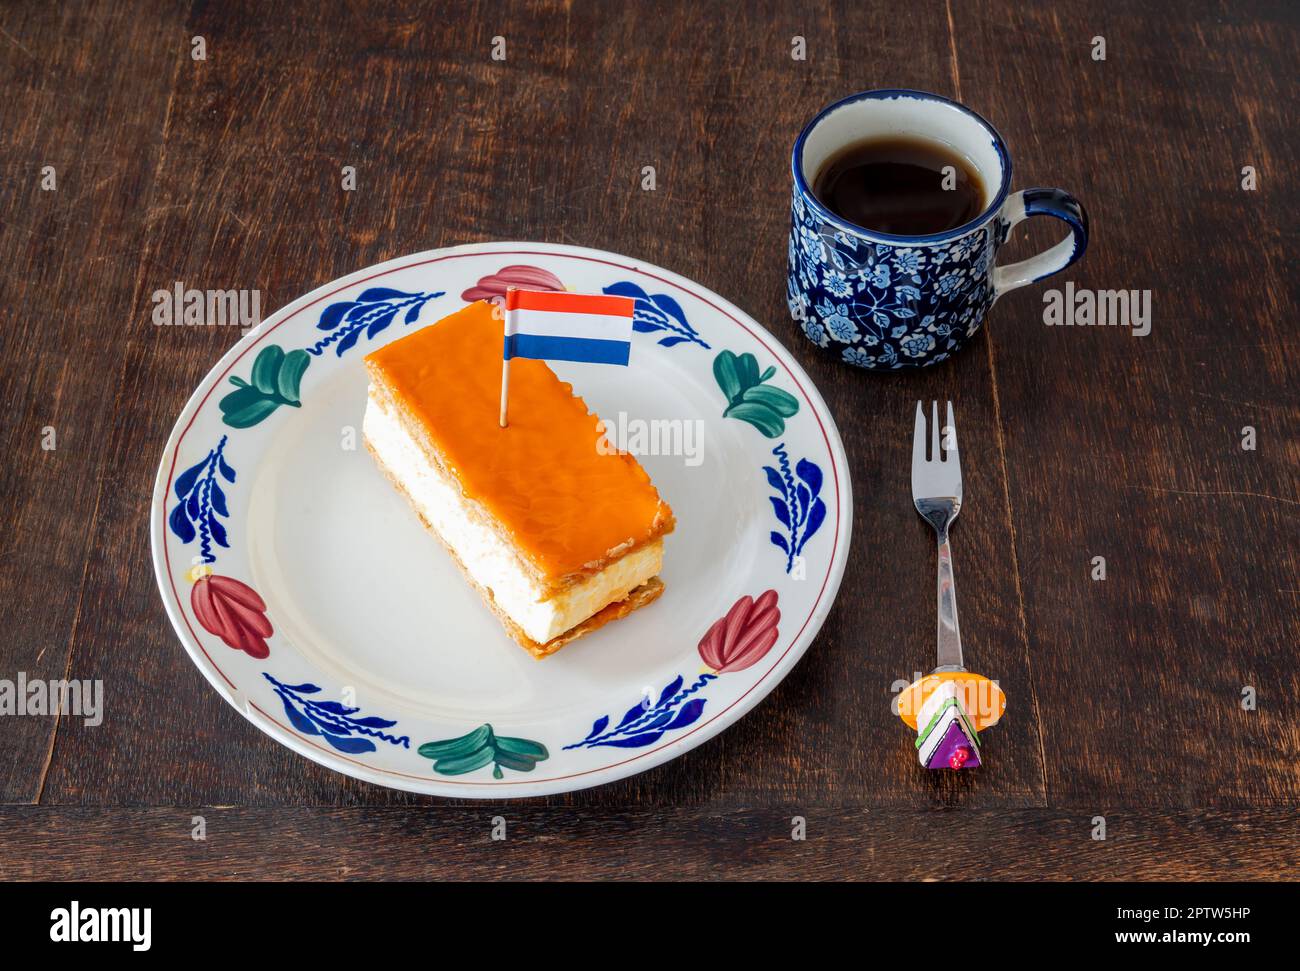 Pastelería tradicional holandesa llamada Tompouce con capa superior naranja y bandera holandesa, que se come típicamente durante las celebraciones del Día del Rey Foto de stock